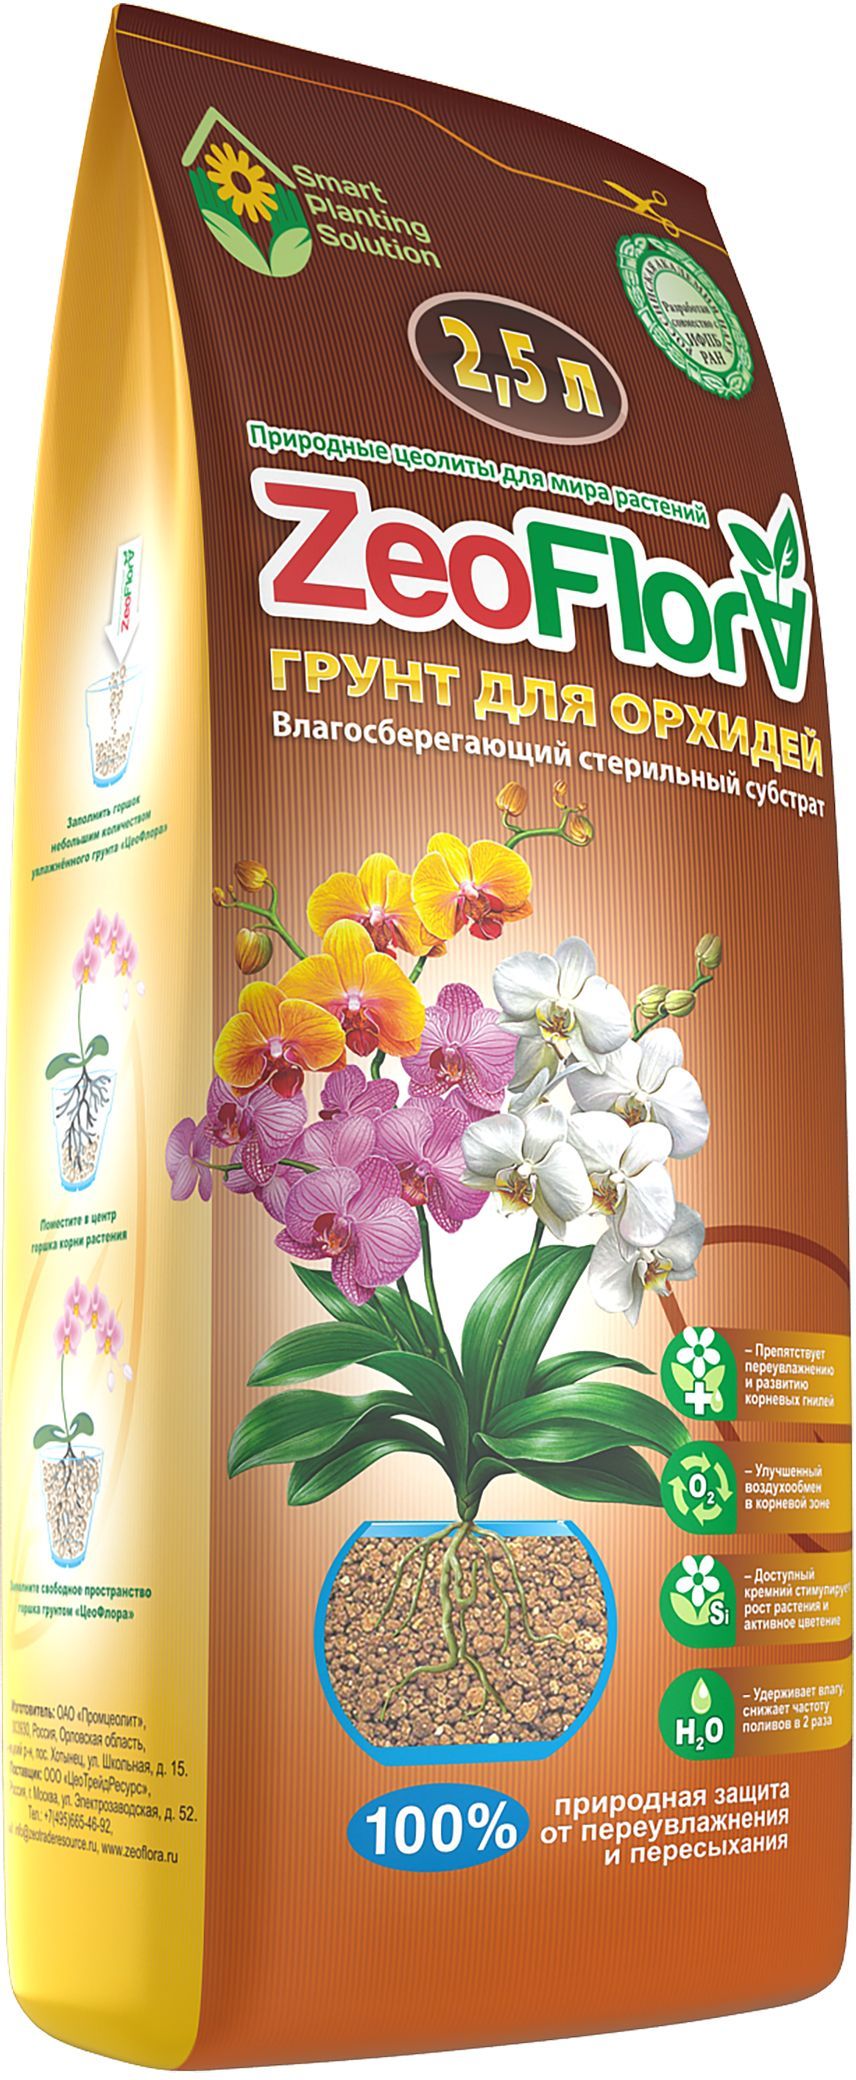 Цеофлора для орхидей